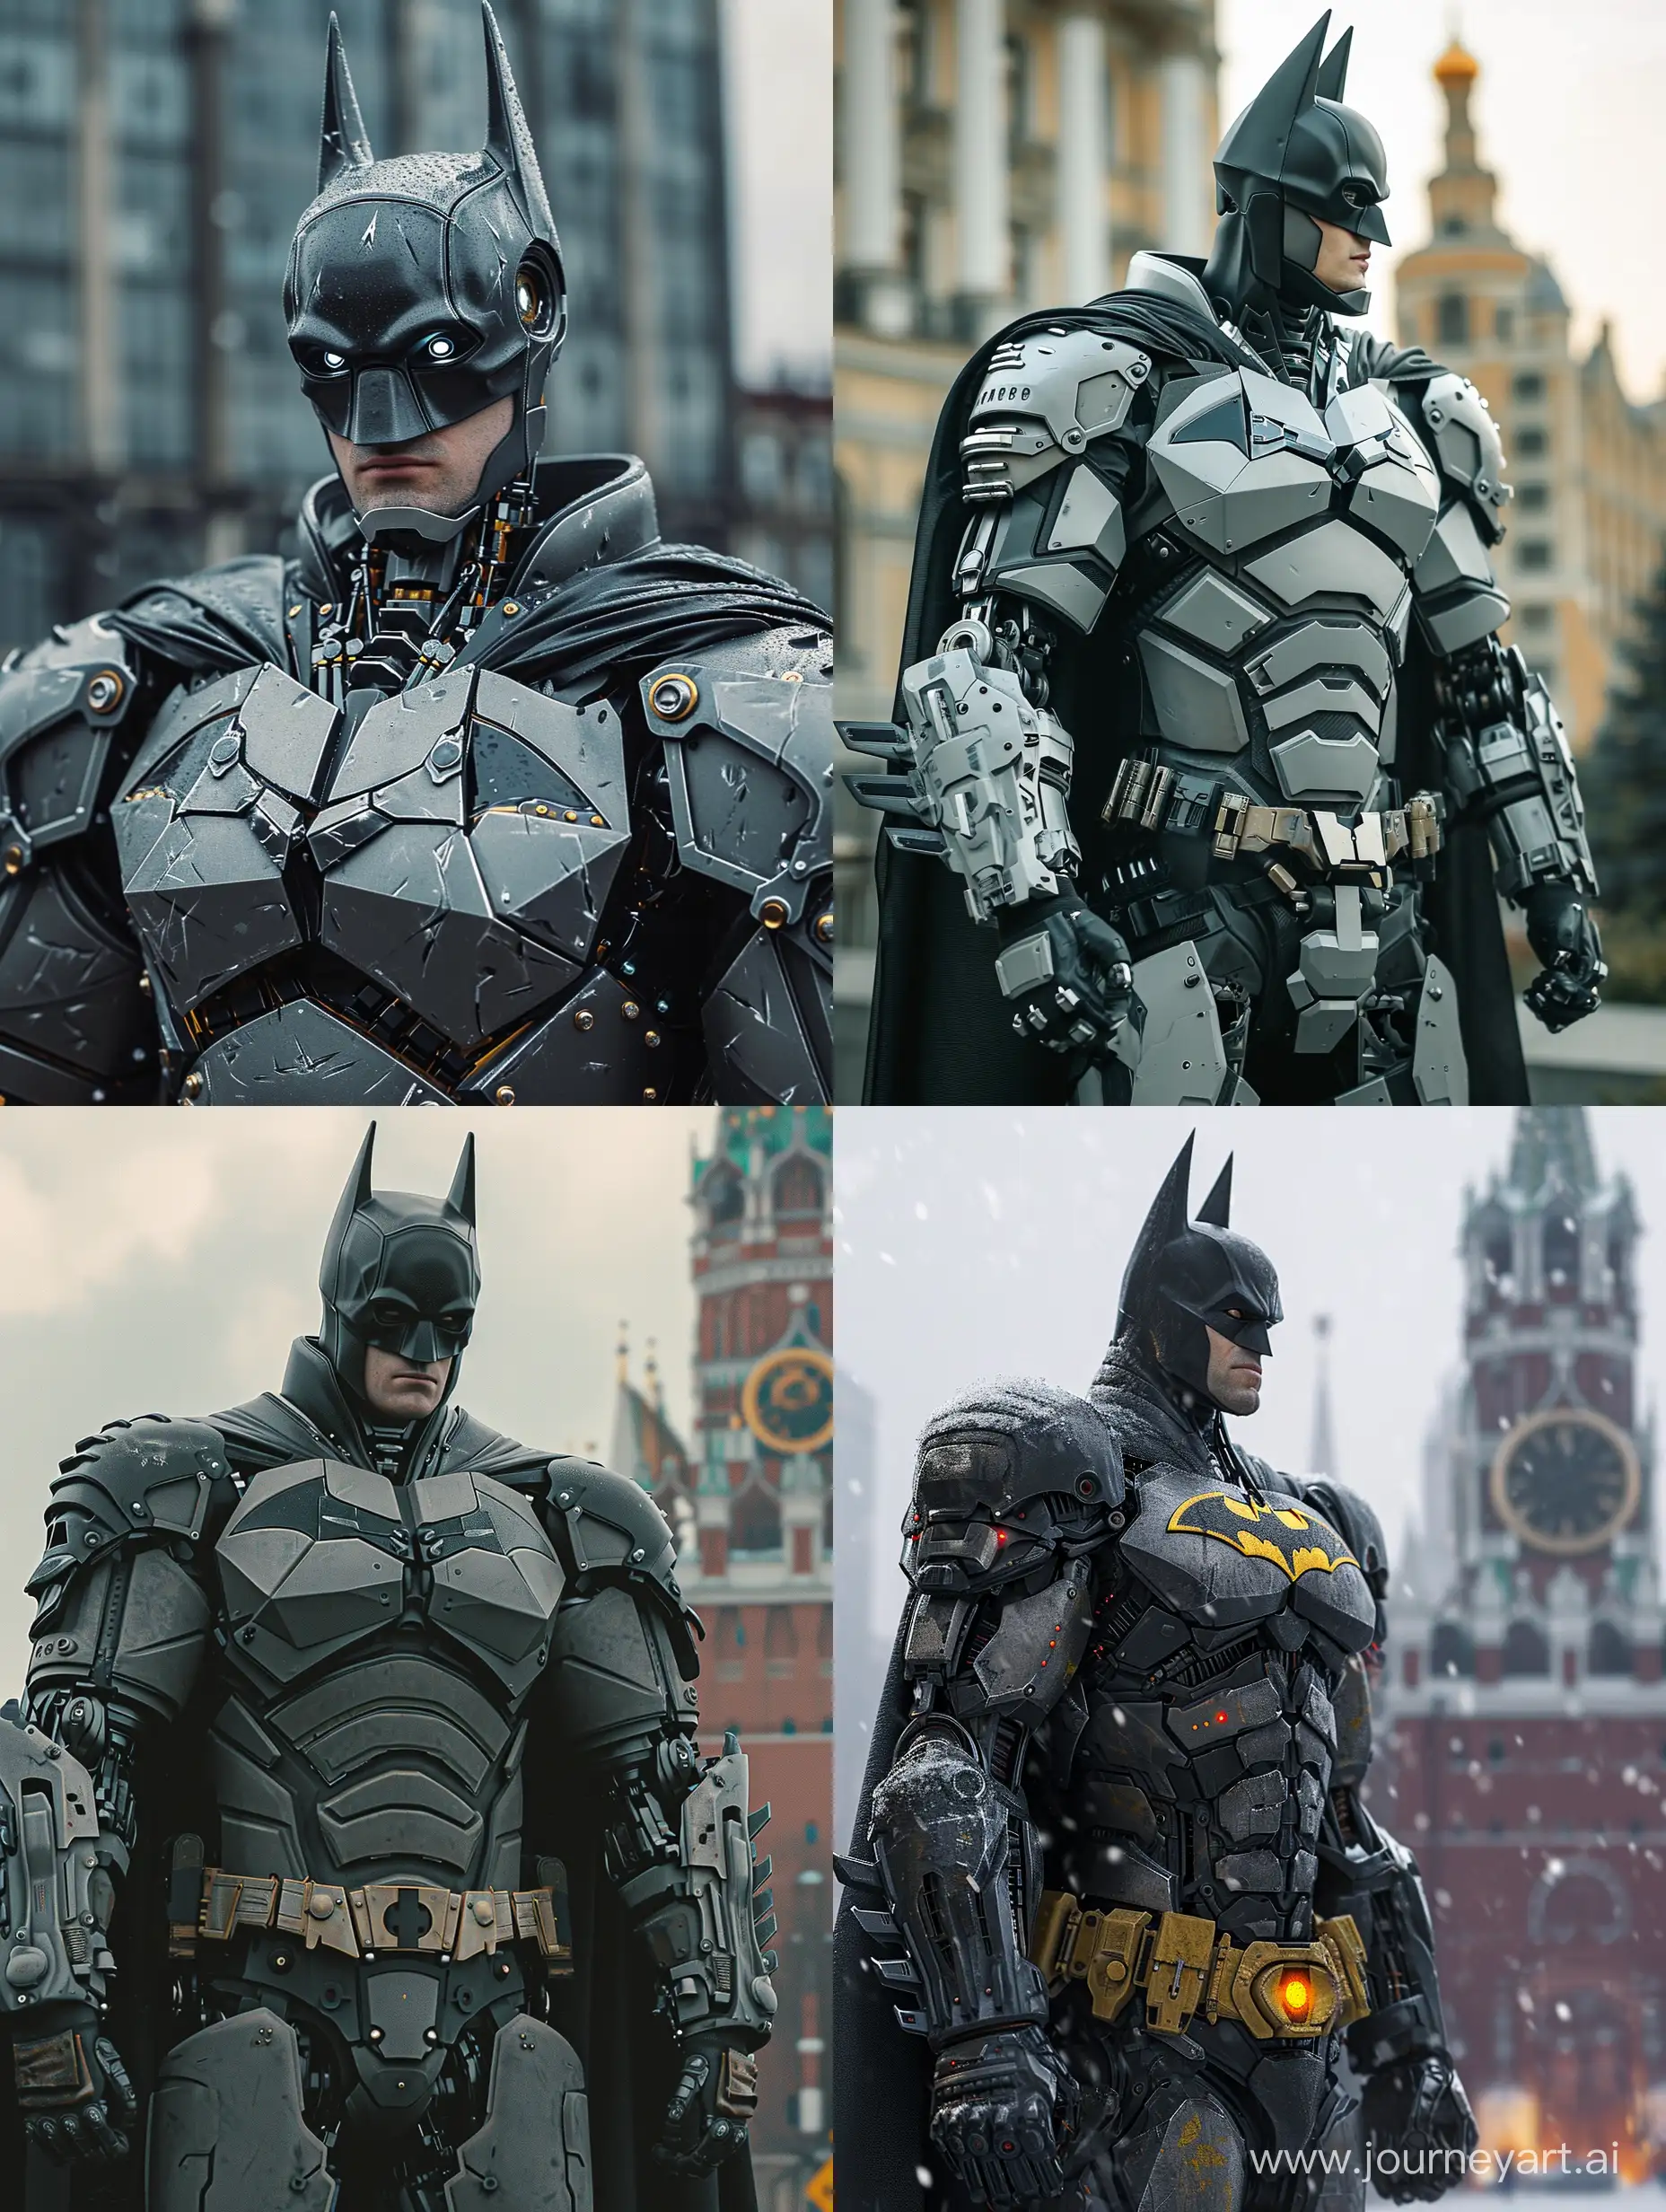 Robotic batman in Moscow.8k, midjourney